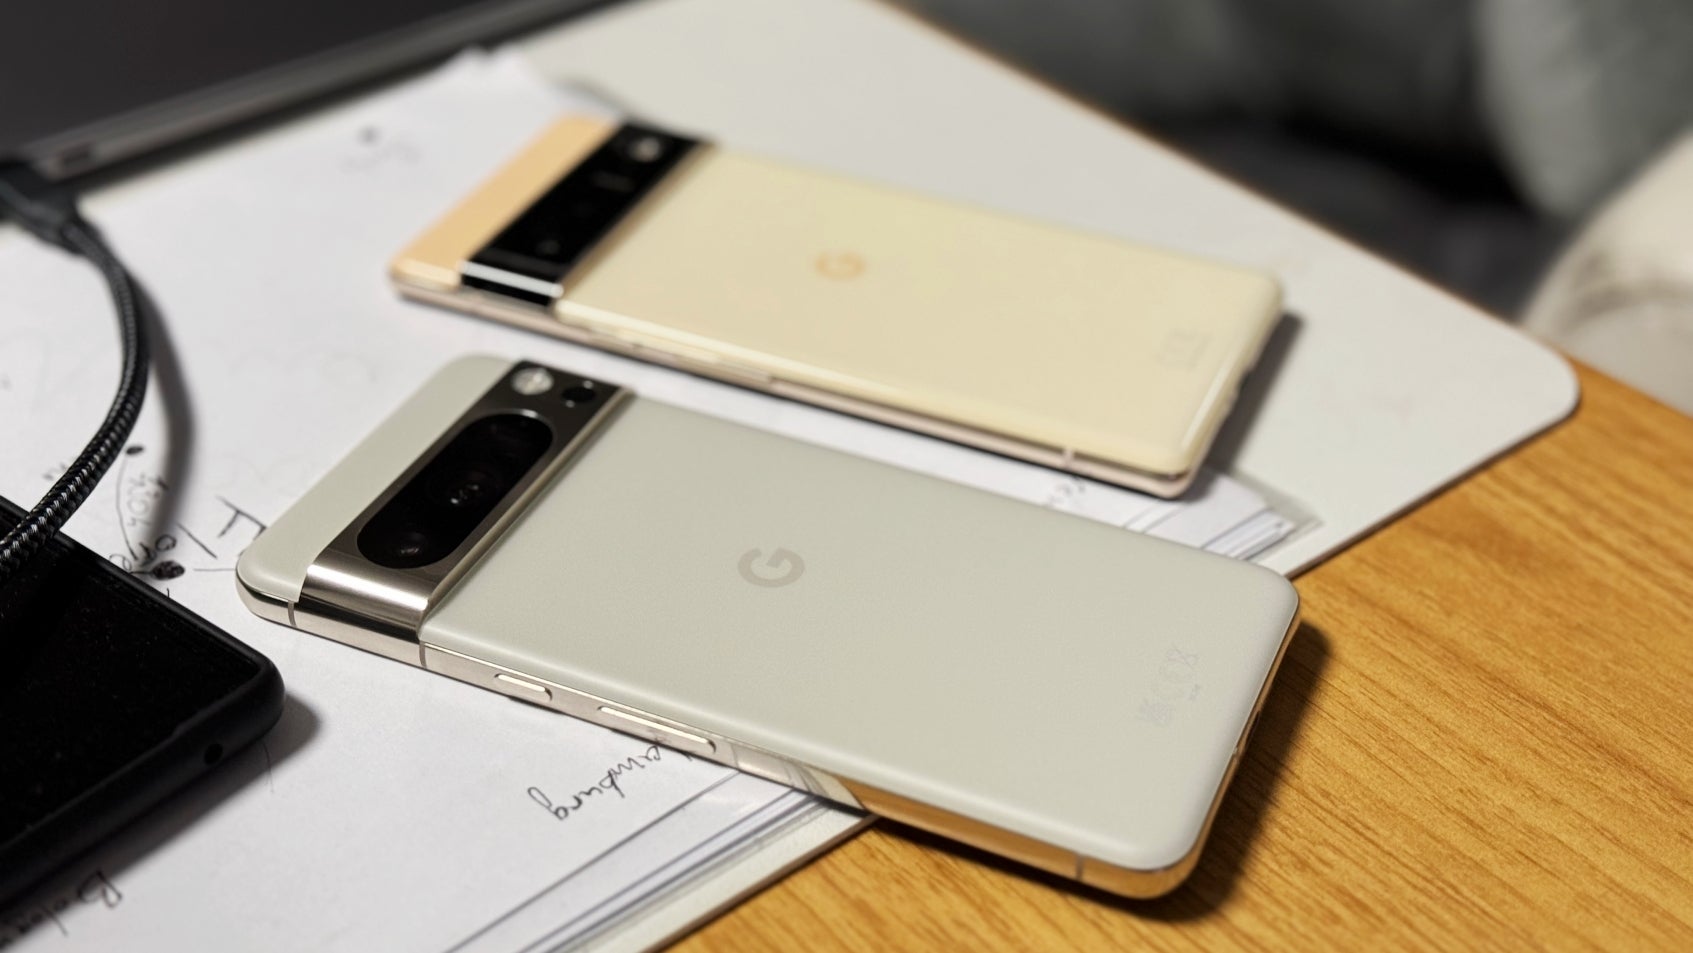 Google ist nicht ganz so mutig wie LG, leistet aber gute Arbeit darin, Telefone zu entwickeln, die so anders wie möglich aussehen als das iPhone.  - Eine Kopie des iPhone 15 Pro Max für 200 US-Dollar beweist, dass Apple das beliebteste Vorbild für Android ist, aber das sollte sich ändern